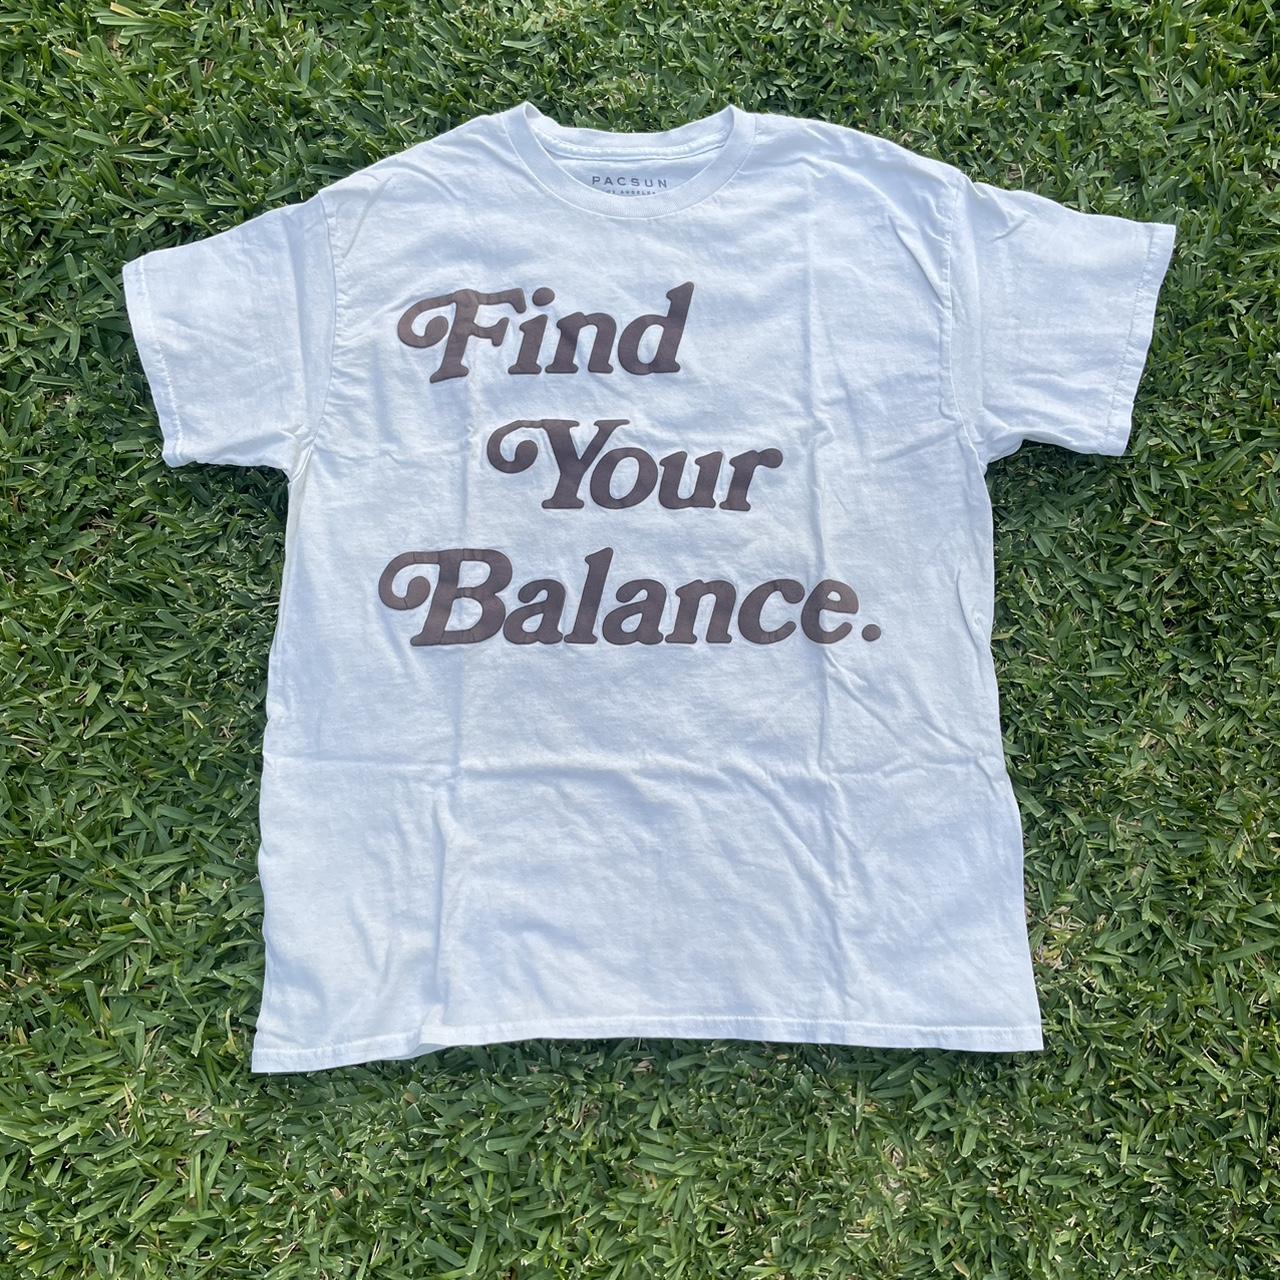 PacSun Balance T-Shirt